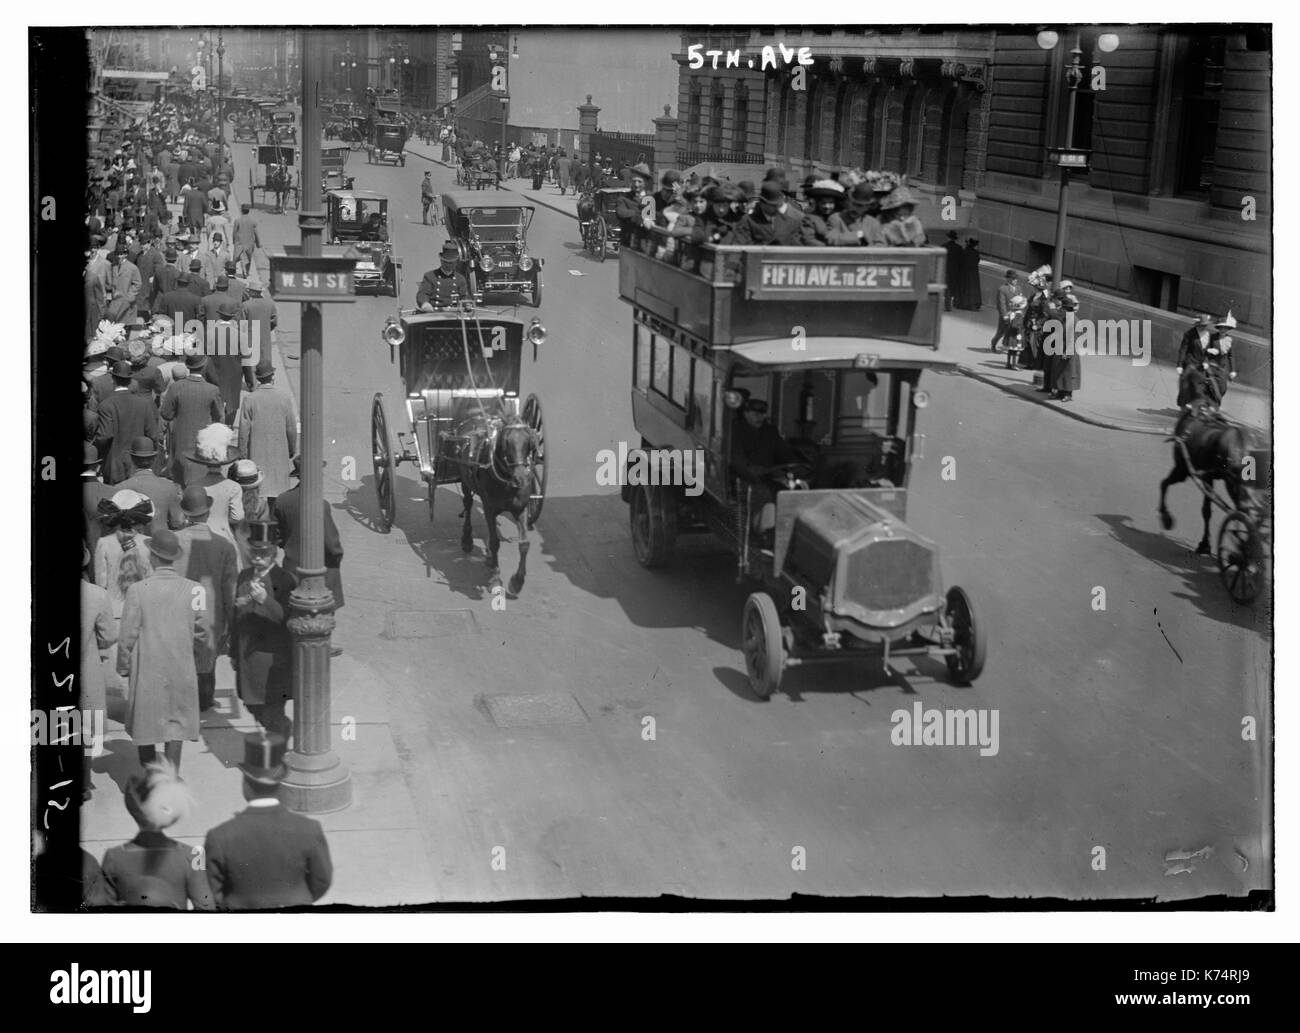 Ver, mirando al norte, en la esquina de West 51st Street y 5th Avenue, mostrando las calles atestadas con los peatones y el tráfico de automóviles, la ciudad de Nueva York, circa 1915. Carruajes tirados por caballos y coches comparten la carretera. Foto de stock